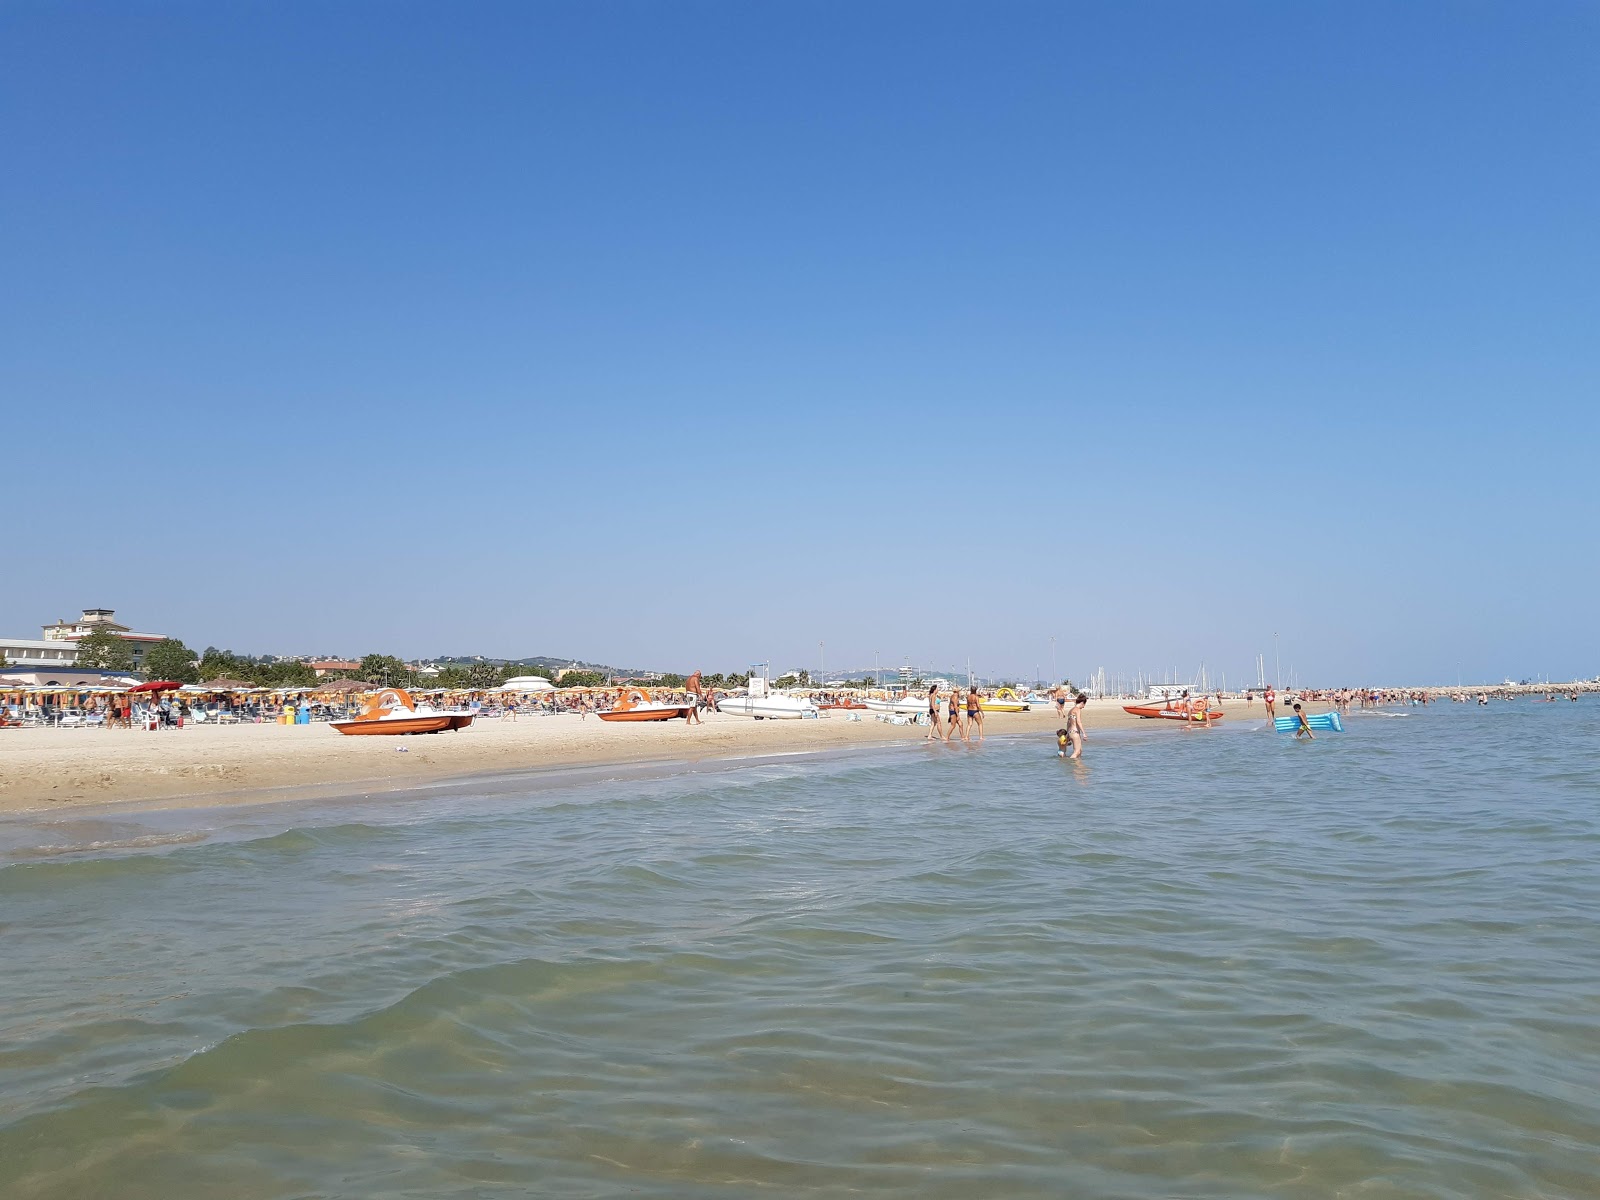 Fotografie cu Giulianova beach cu o suprafață de nisip fin strălucitor